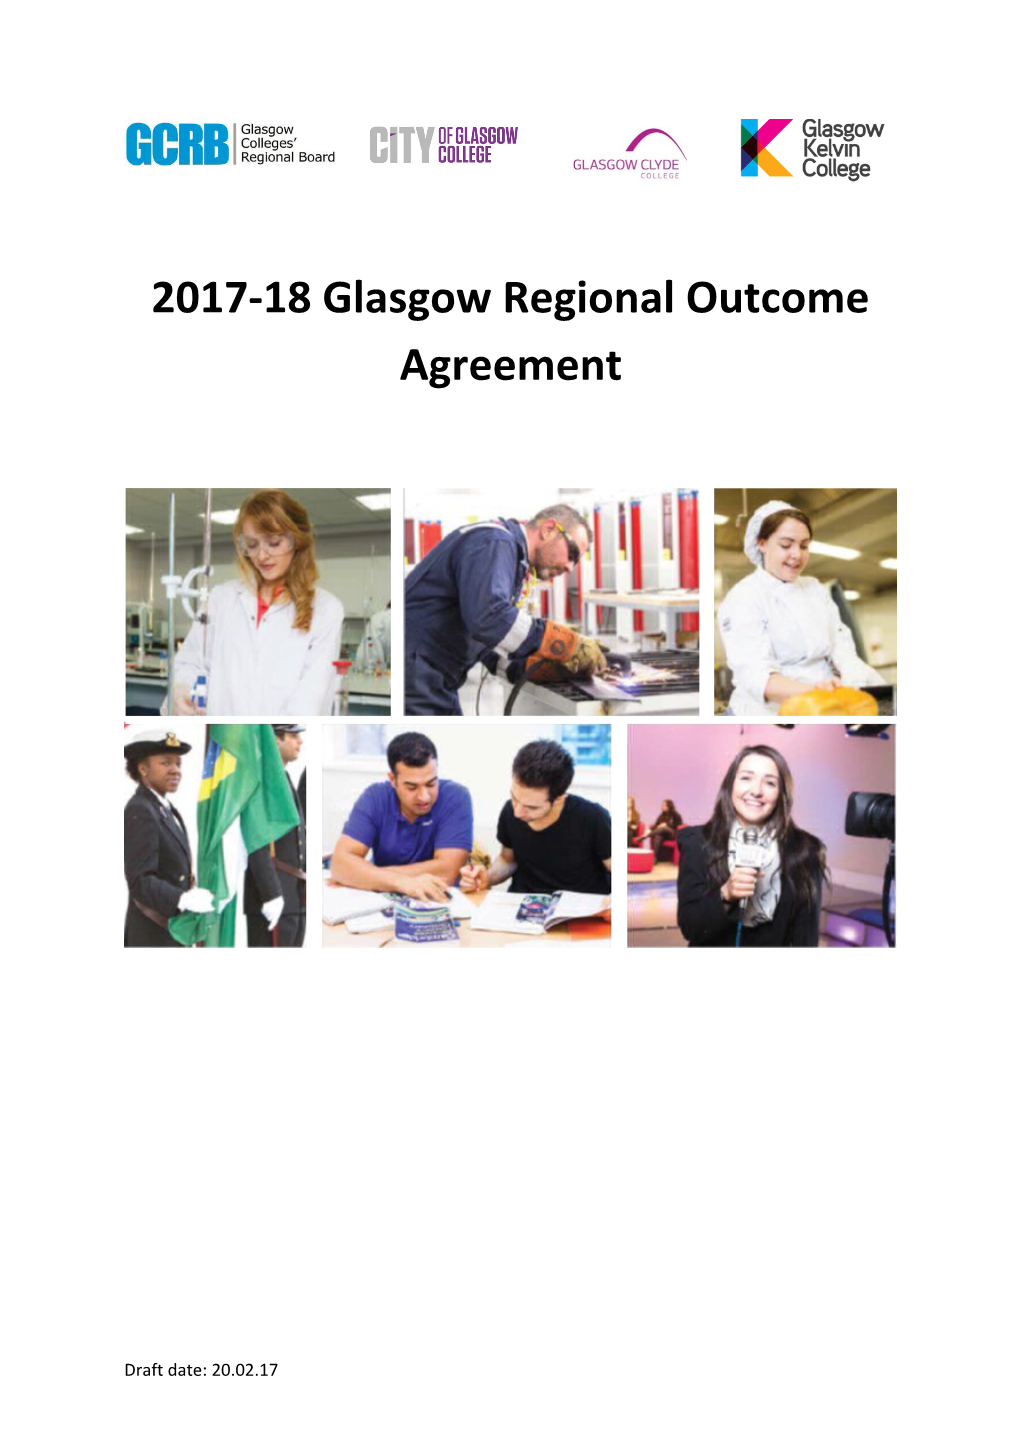 2017-18 Glasgow Regional Outcome Agreement